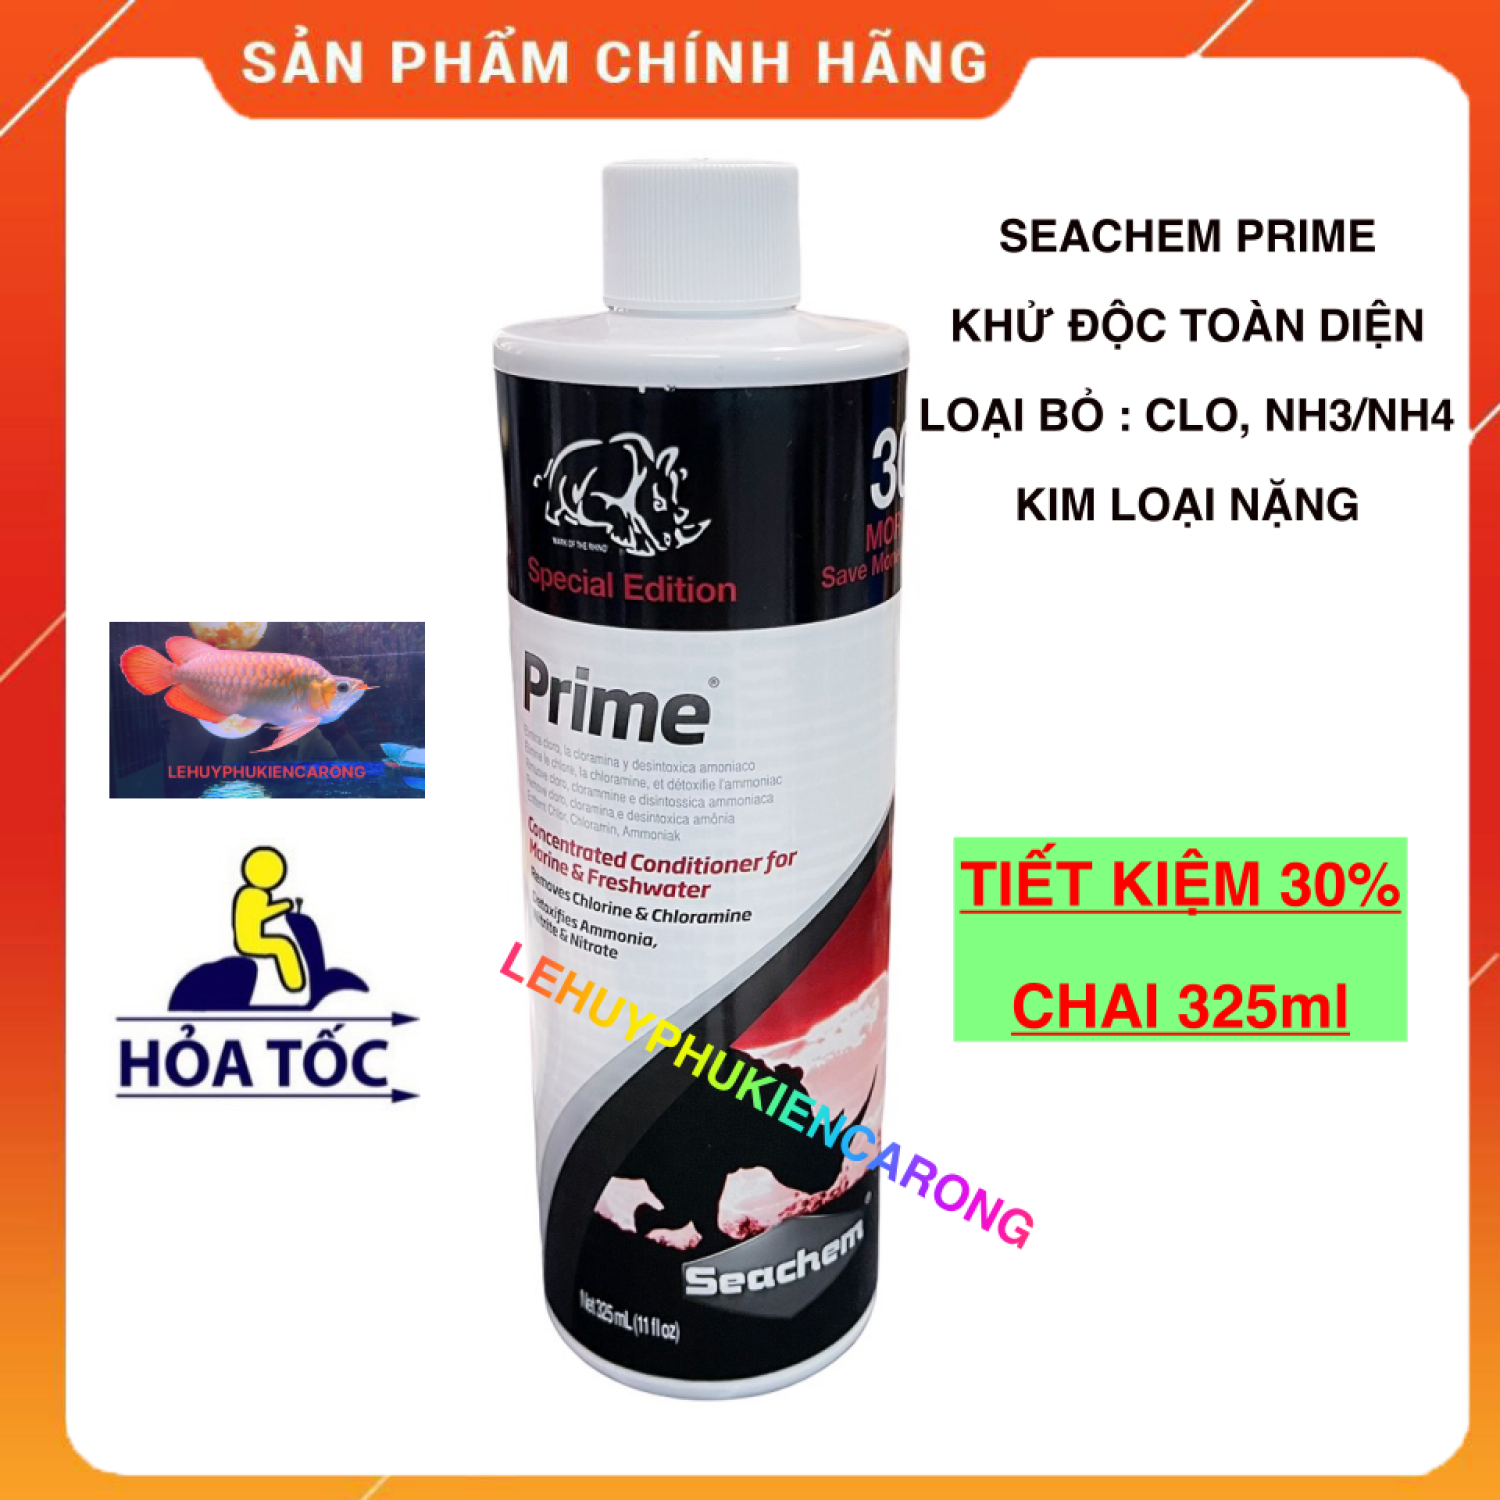 Seachem Prime Chai 325ml Dung Dịch Khử Nước TOÀN DIỆN Cho Bể Cá Cảnh thumbnail